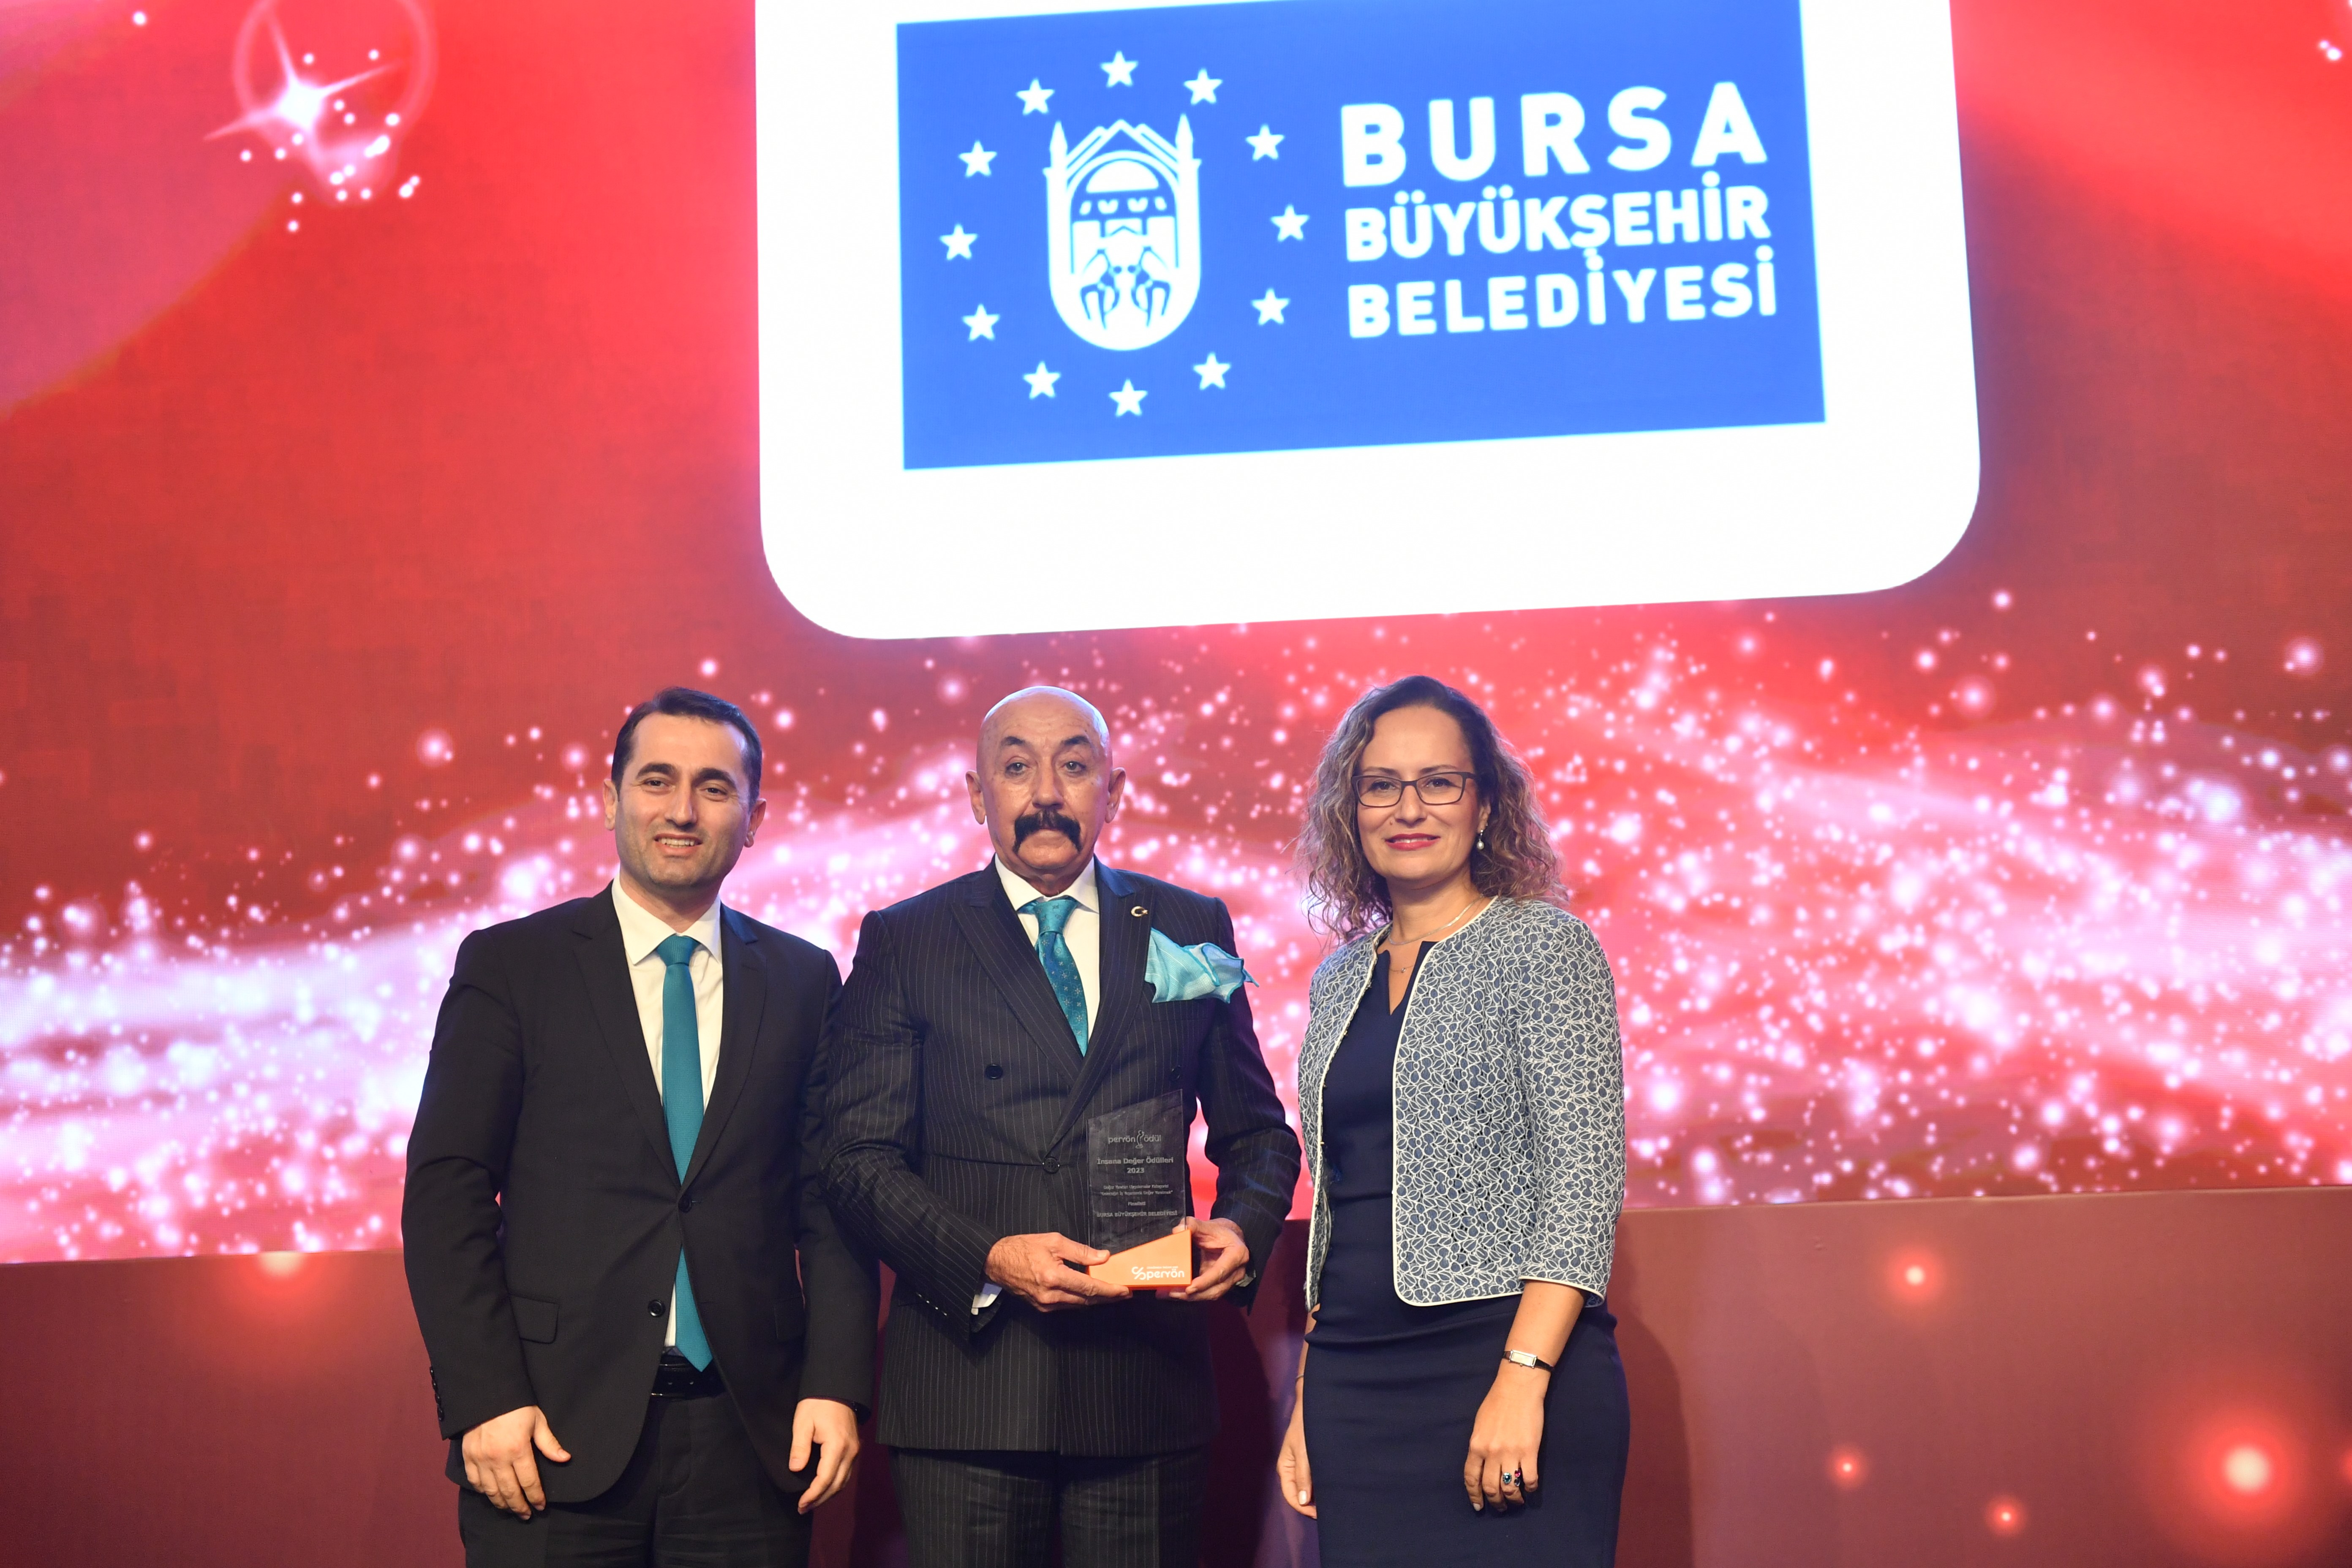 Bursa’ya ‘Yalın Belediyecilik’ ödülü